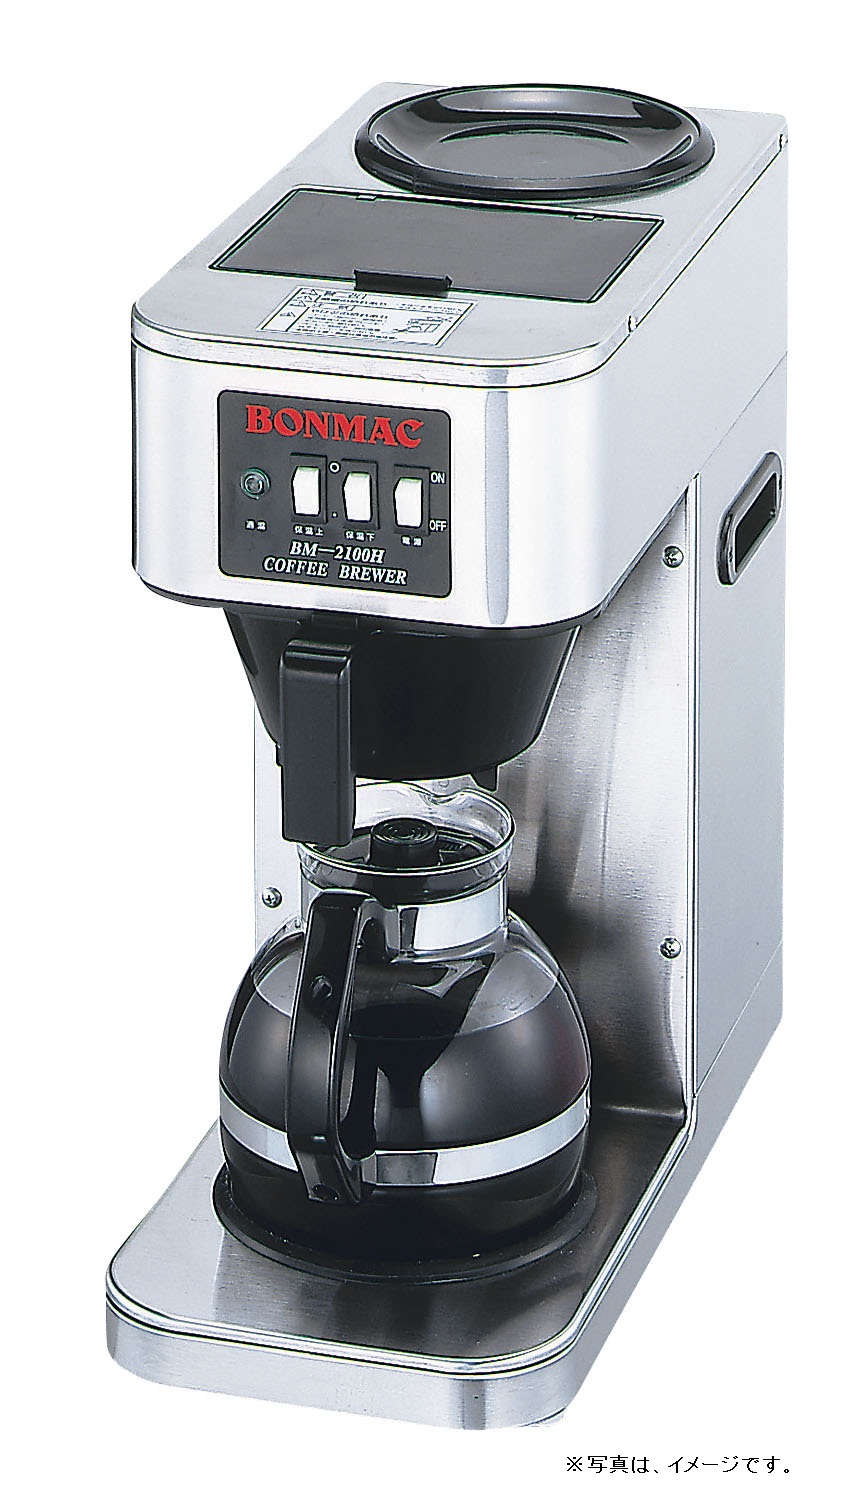 ボンマック コーヒーブルーワー BM-2100